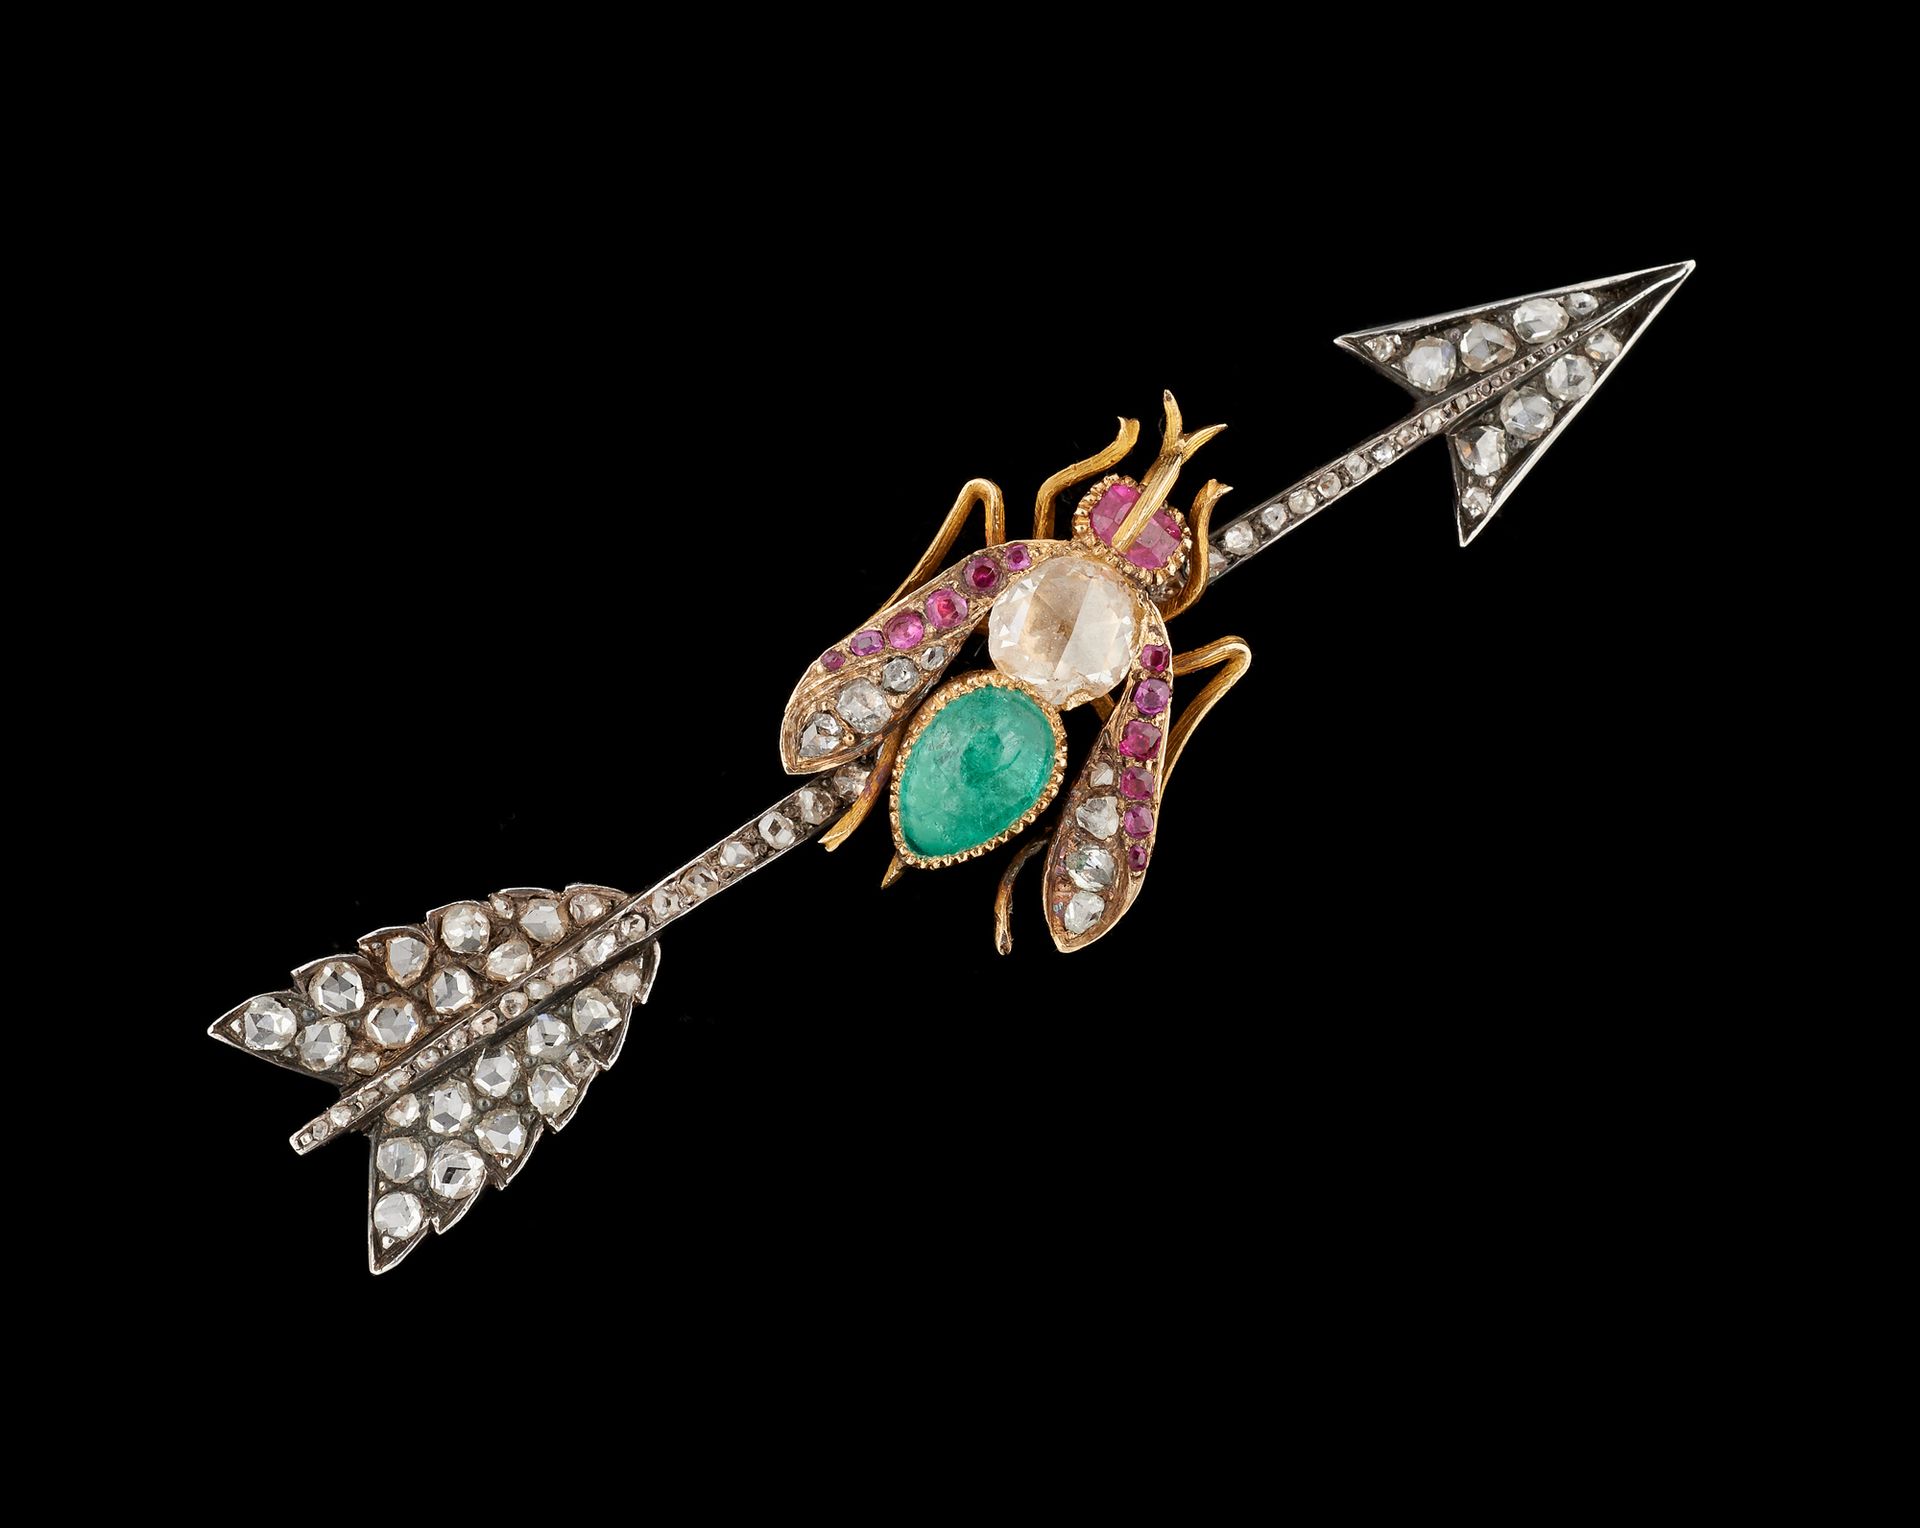 Joaillerie. 
珠宝：银色和金色的胸针，上面装饰着凸圆形祖母绿、红宝石和玫瑰式切割钻石。

(主钻石上的芯片)